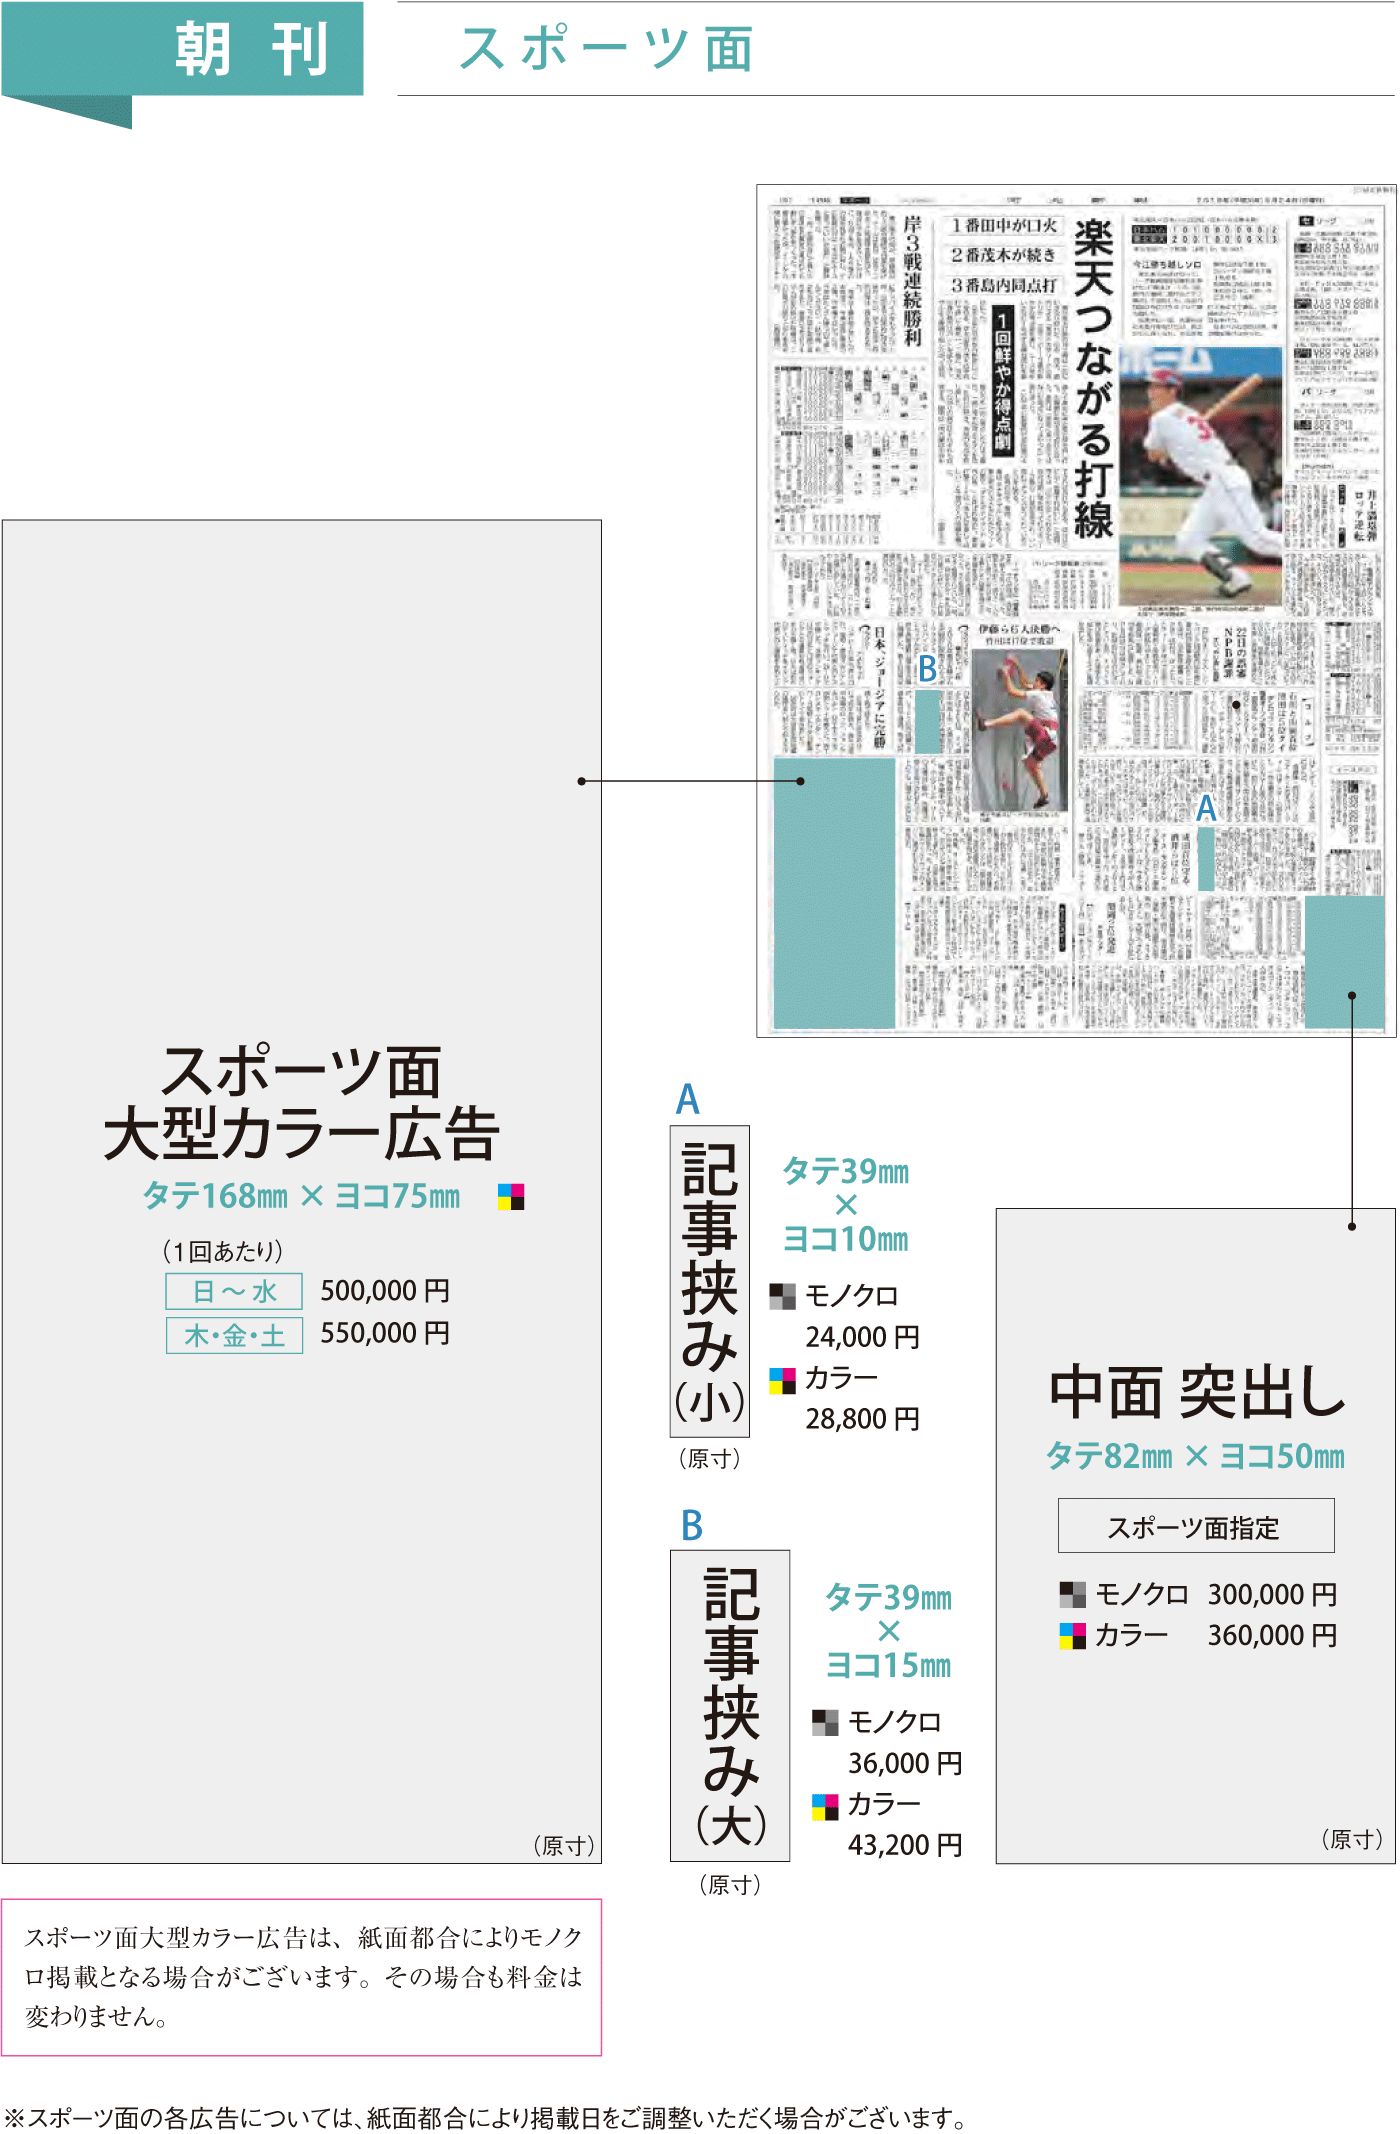 河北新報の朝刊スポーツ面広告掲載イメージ